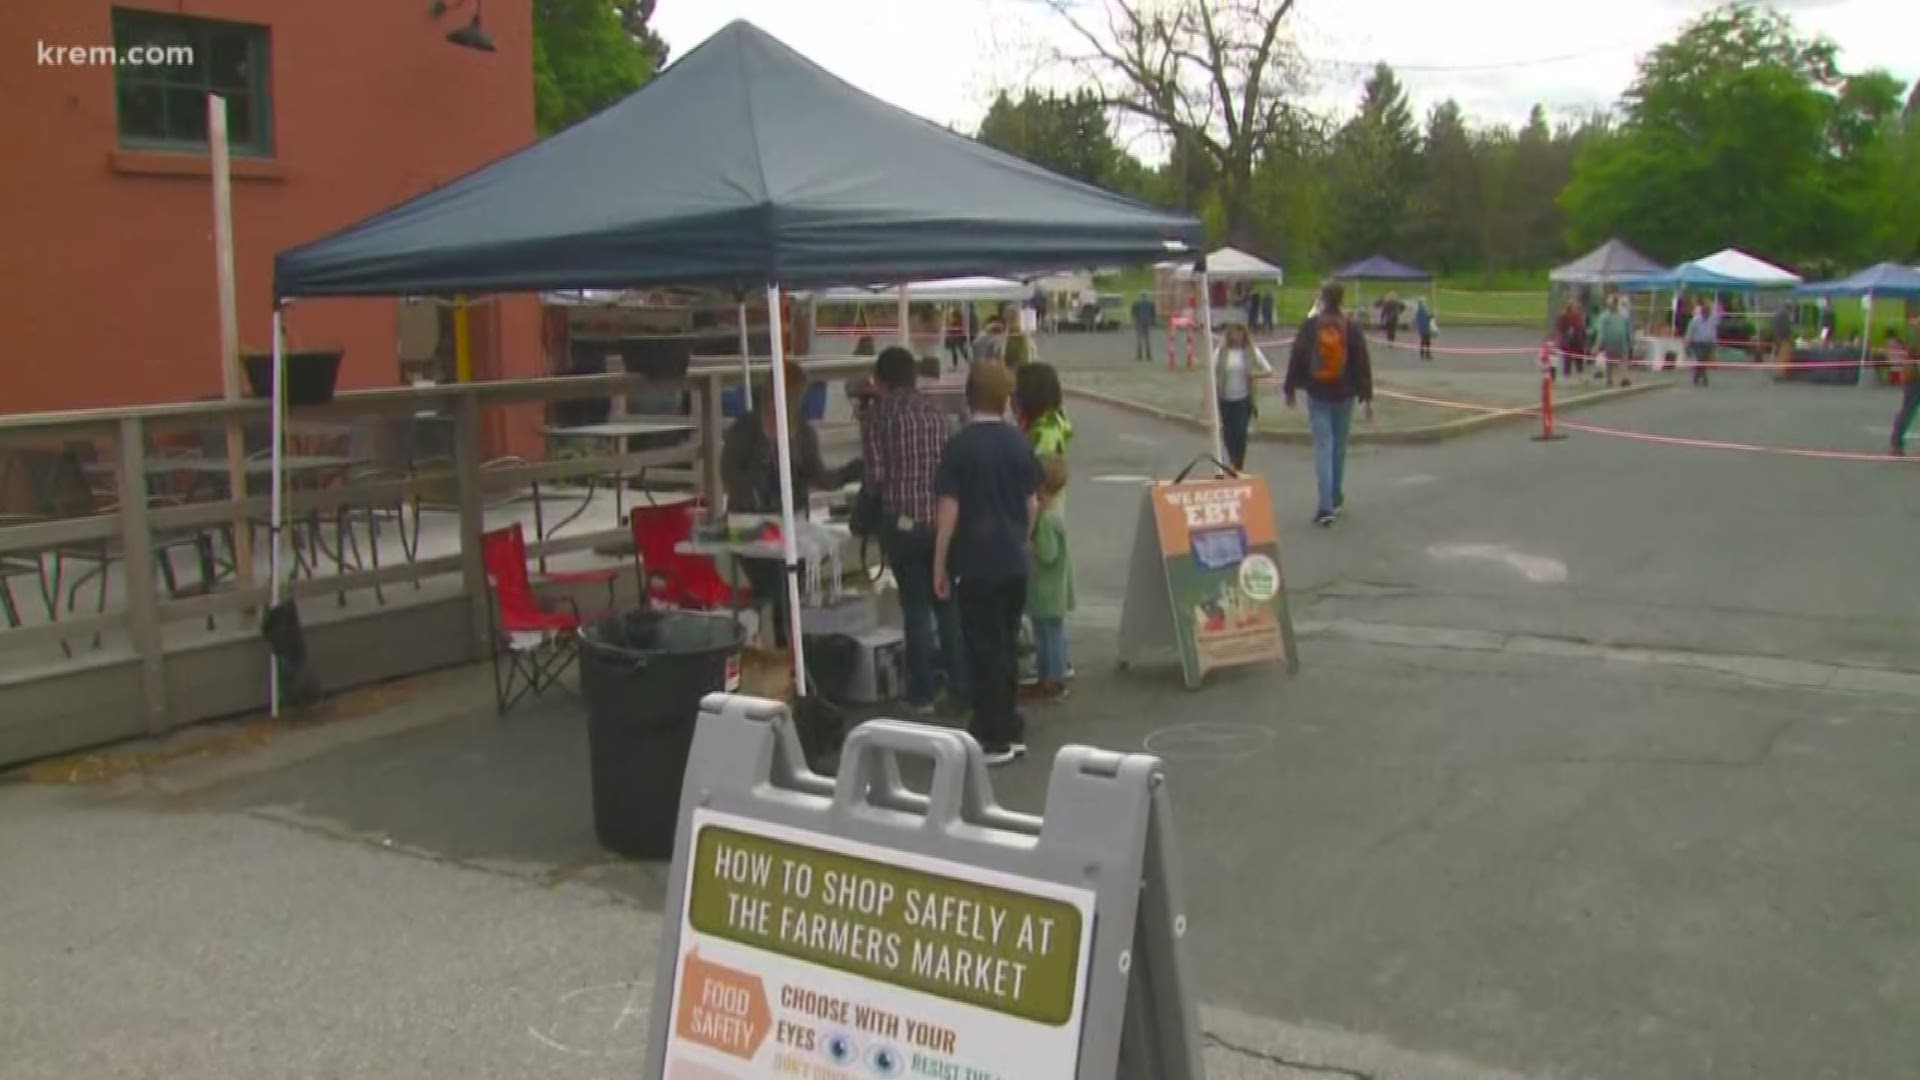 When will farmers markets in the Spokane area reopen?